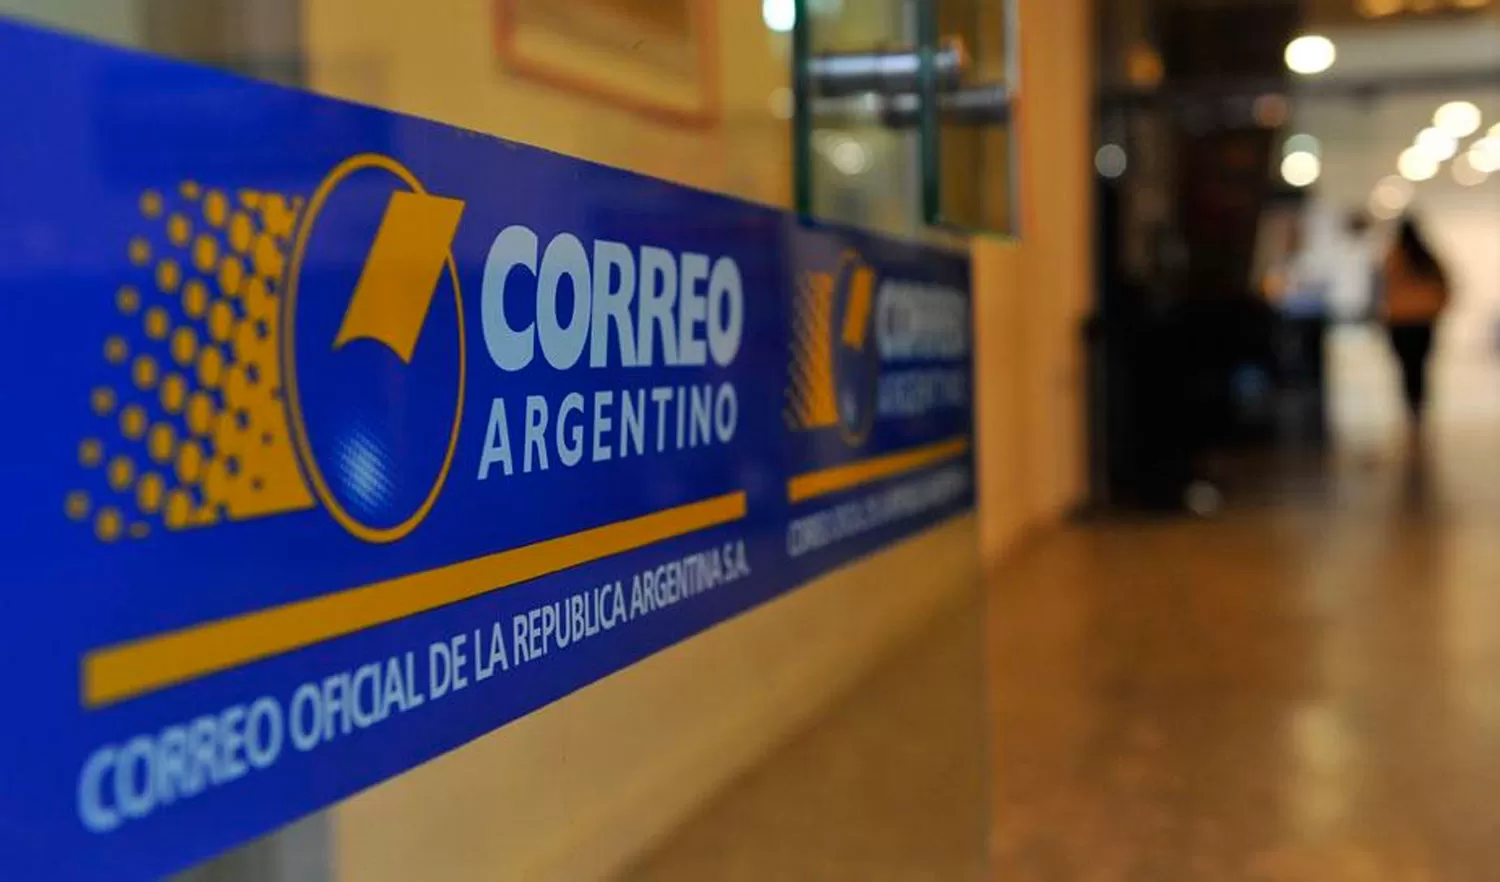 CORREO ARGENTINO. El presidente no quiere involucrarse en empresas relacionadas con su familia.